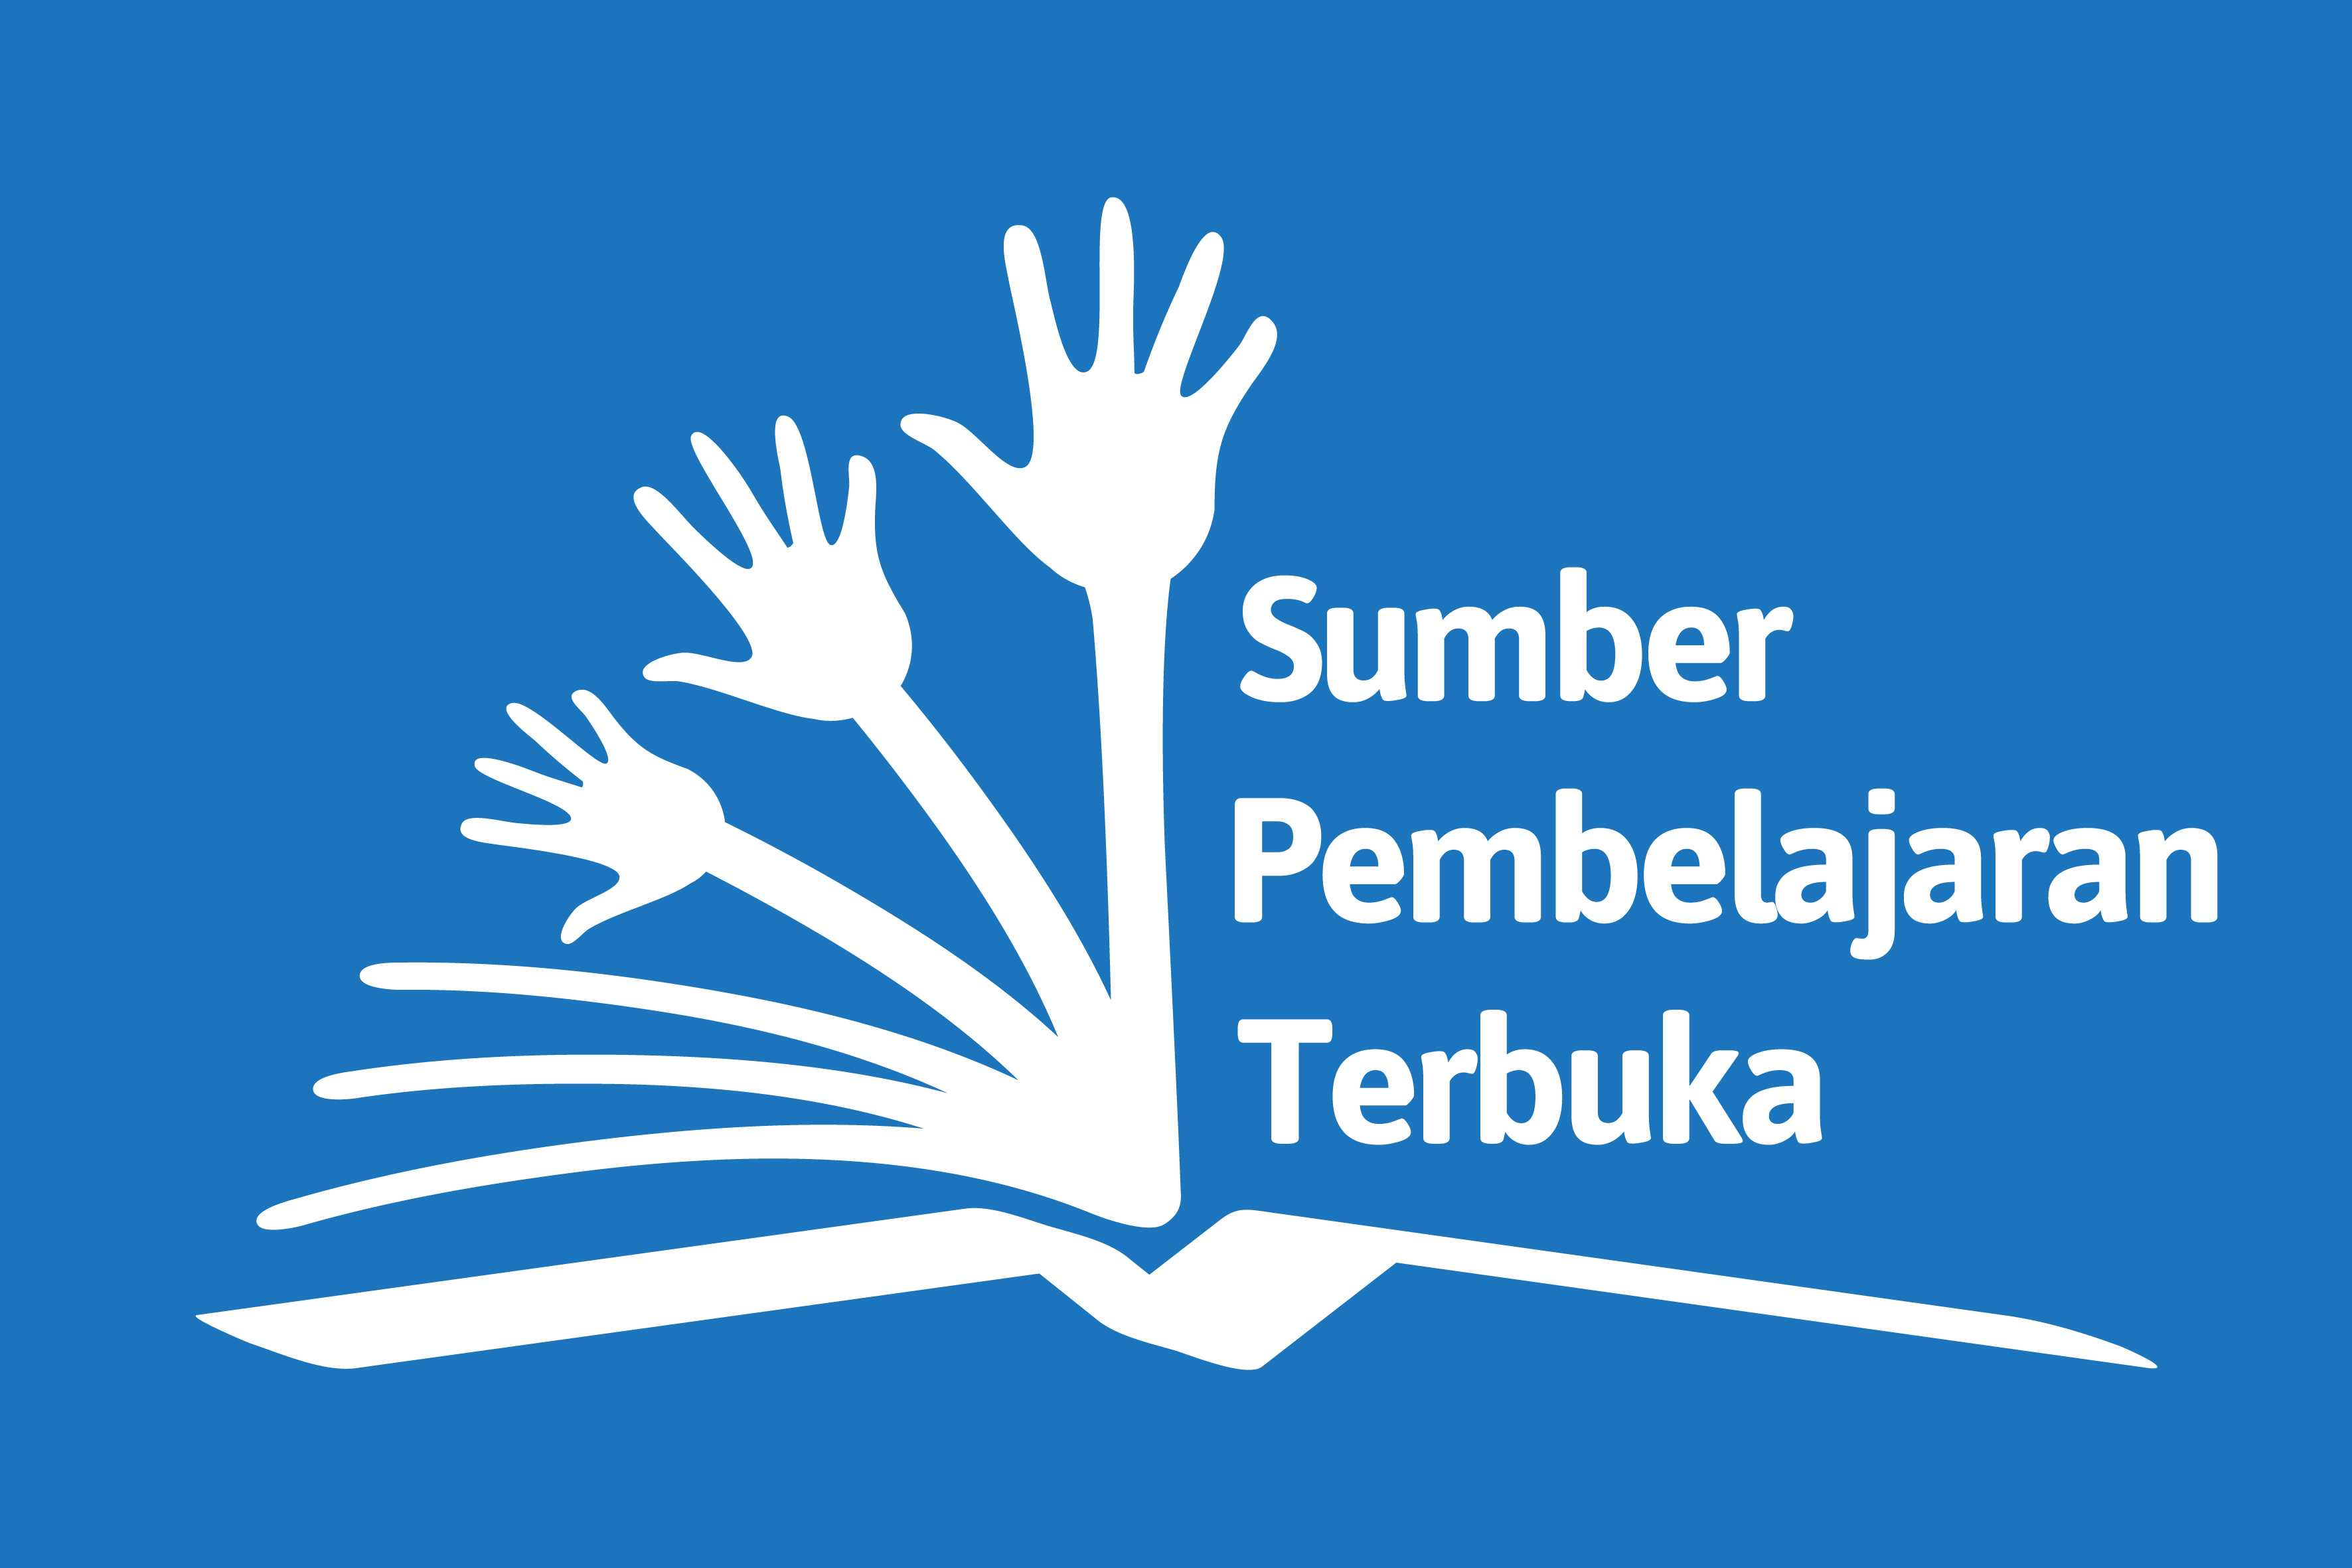 OER_in_Indonesian_Sumber_Pembelajaran_Terbuka_Logo.jpg